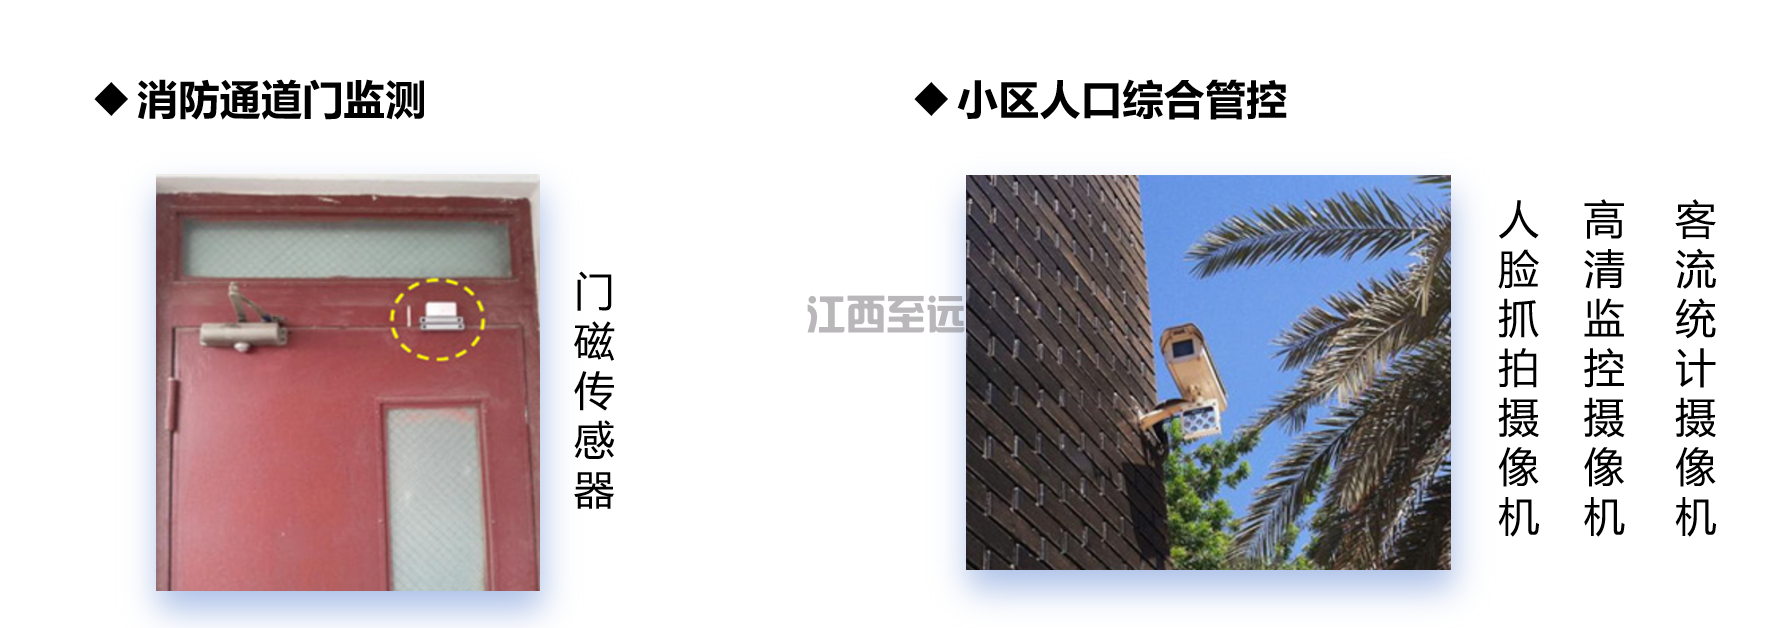 江西至遠-智慧社區/小(xiǎo)區建設解決方案(圖17)